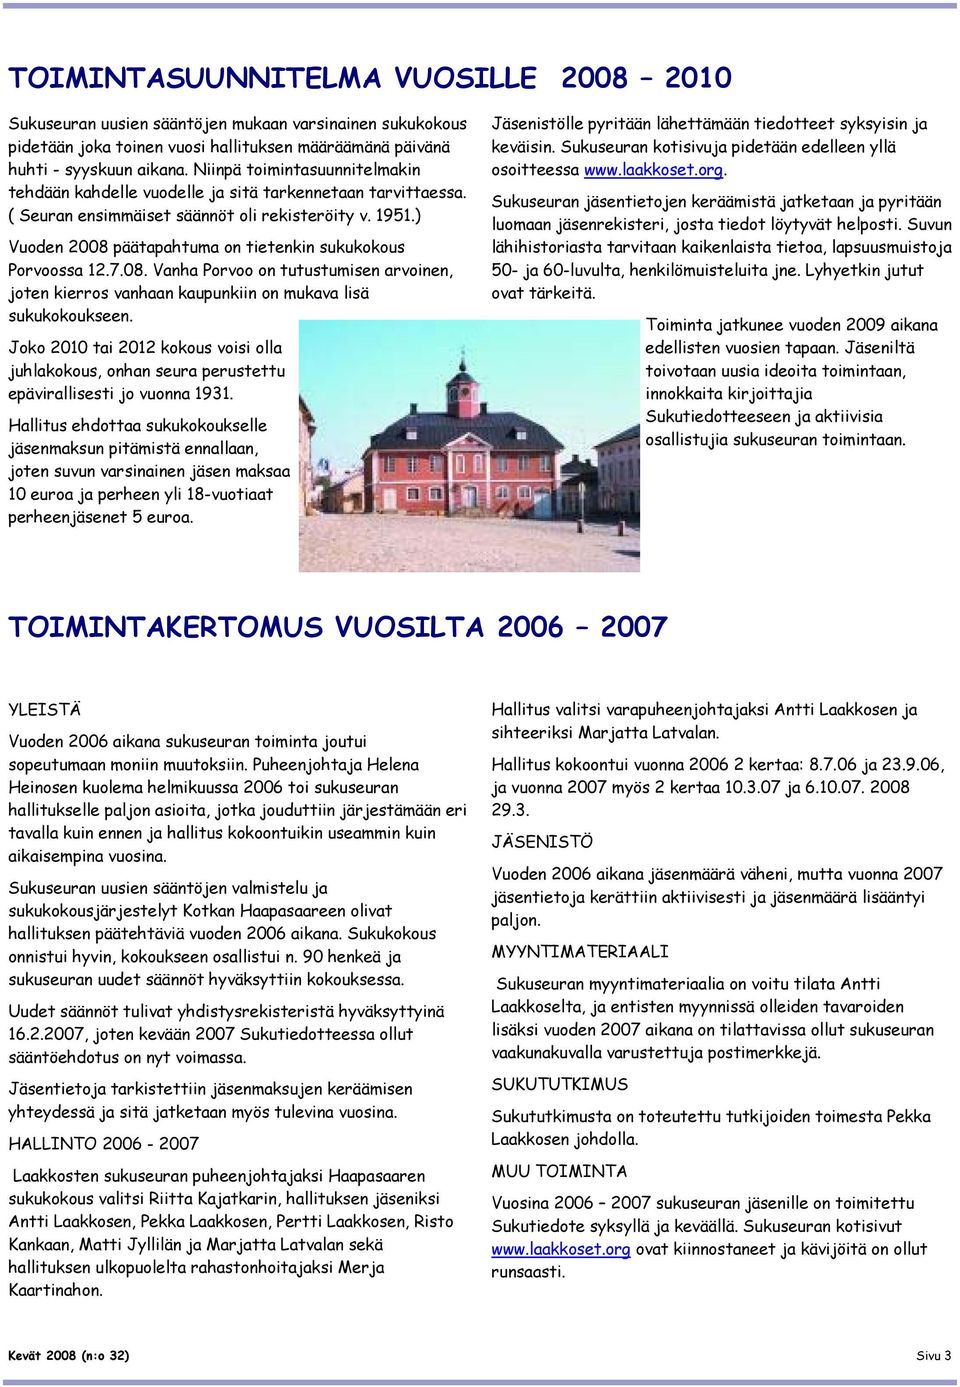 ) Vuoden 2008 päätapahtuma on tietenkin sukukokous Porvoossa 12.7.08. Vanha Porvoo on tutustumisen arvoinen, joten kierros vanhaan kaupunkiin on mukava lisä sukukokoukseen.